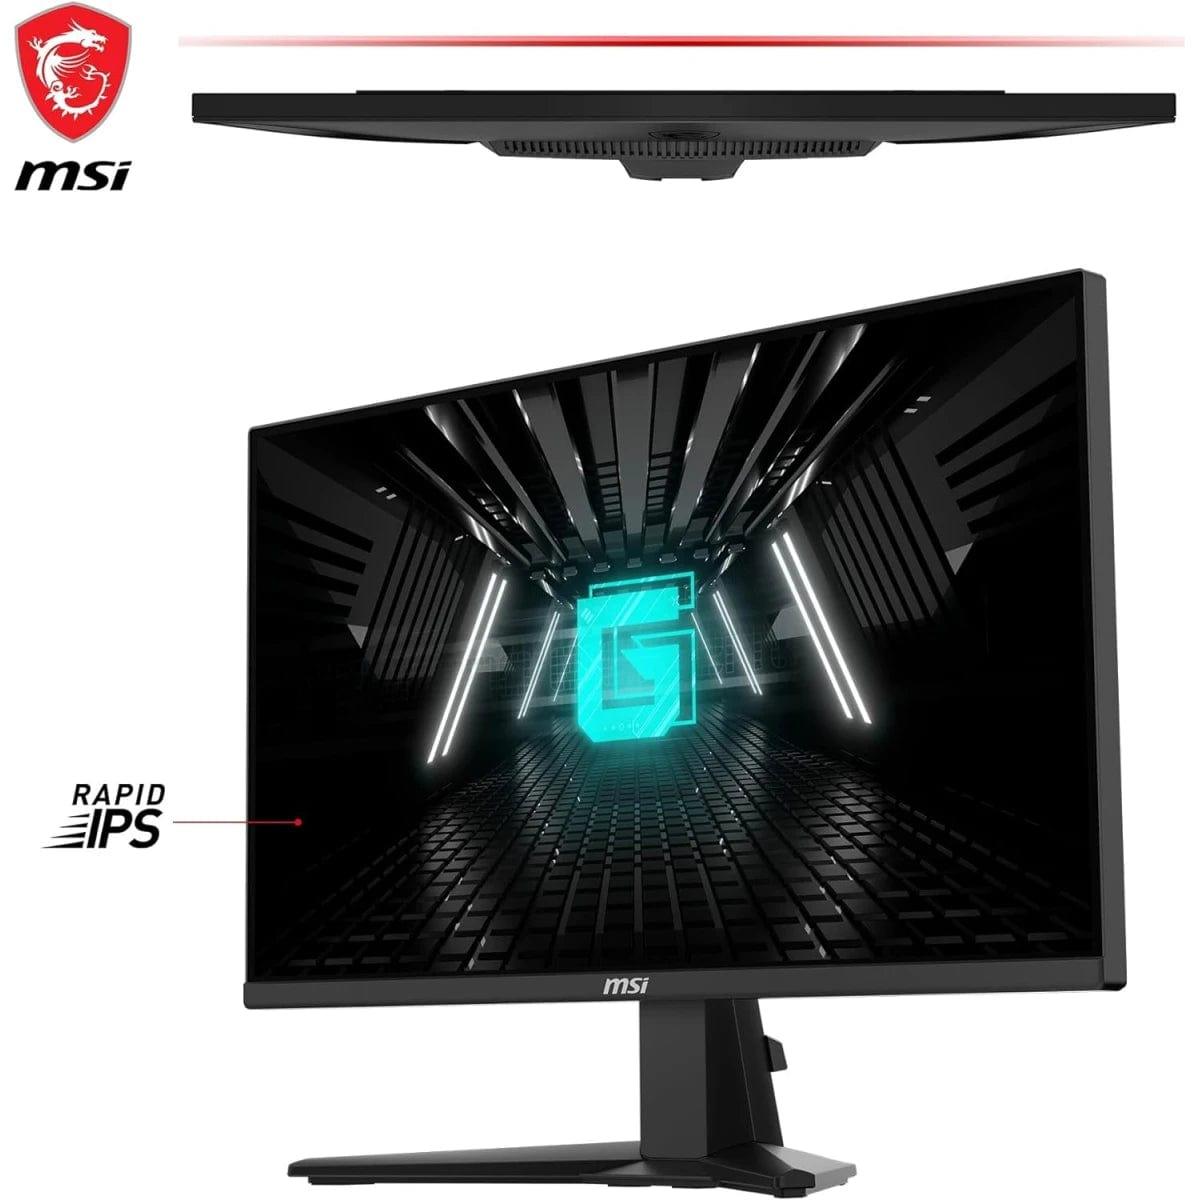 MSI Computer Monitors MSI G255F 25" Rapid IPS Full HD 1ms 180Hz Frameless Night Vision AMD FreeSync w/ 2x HDMI & Displayport Interface - Black